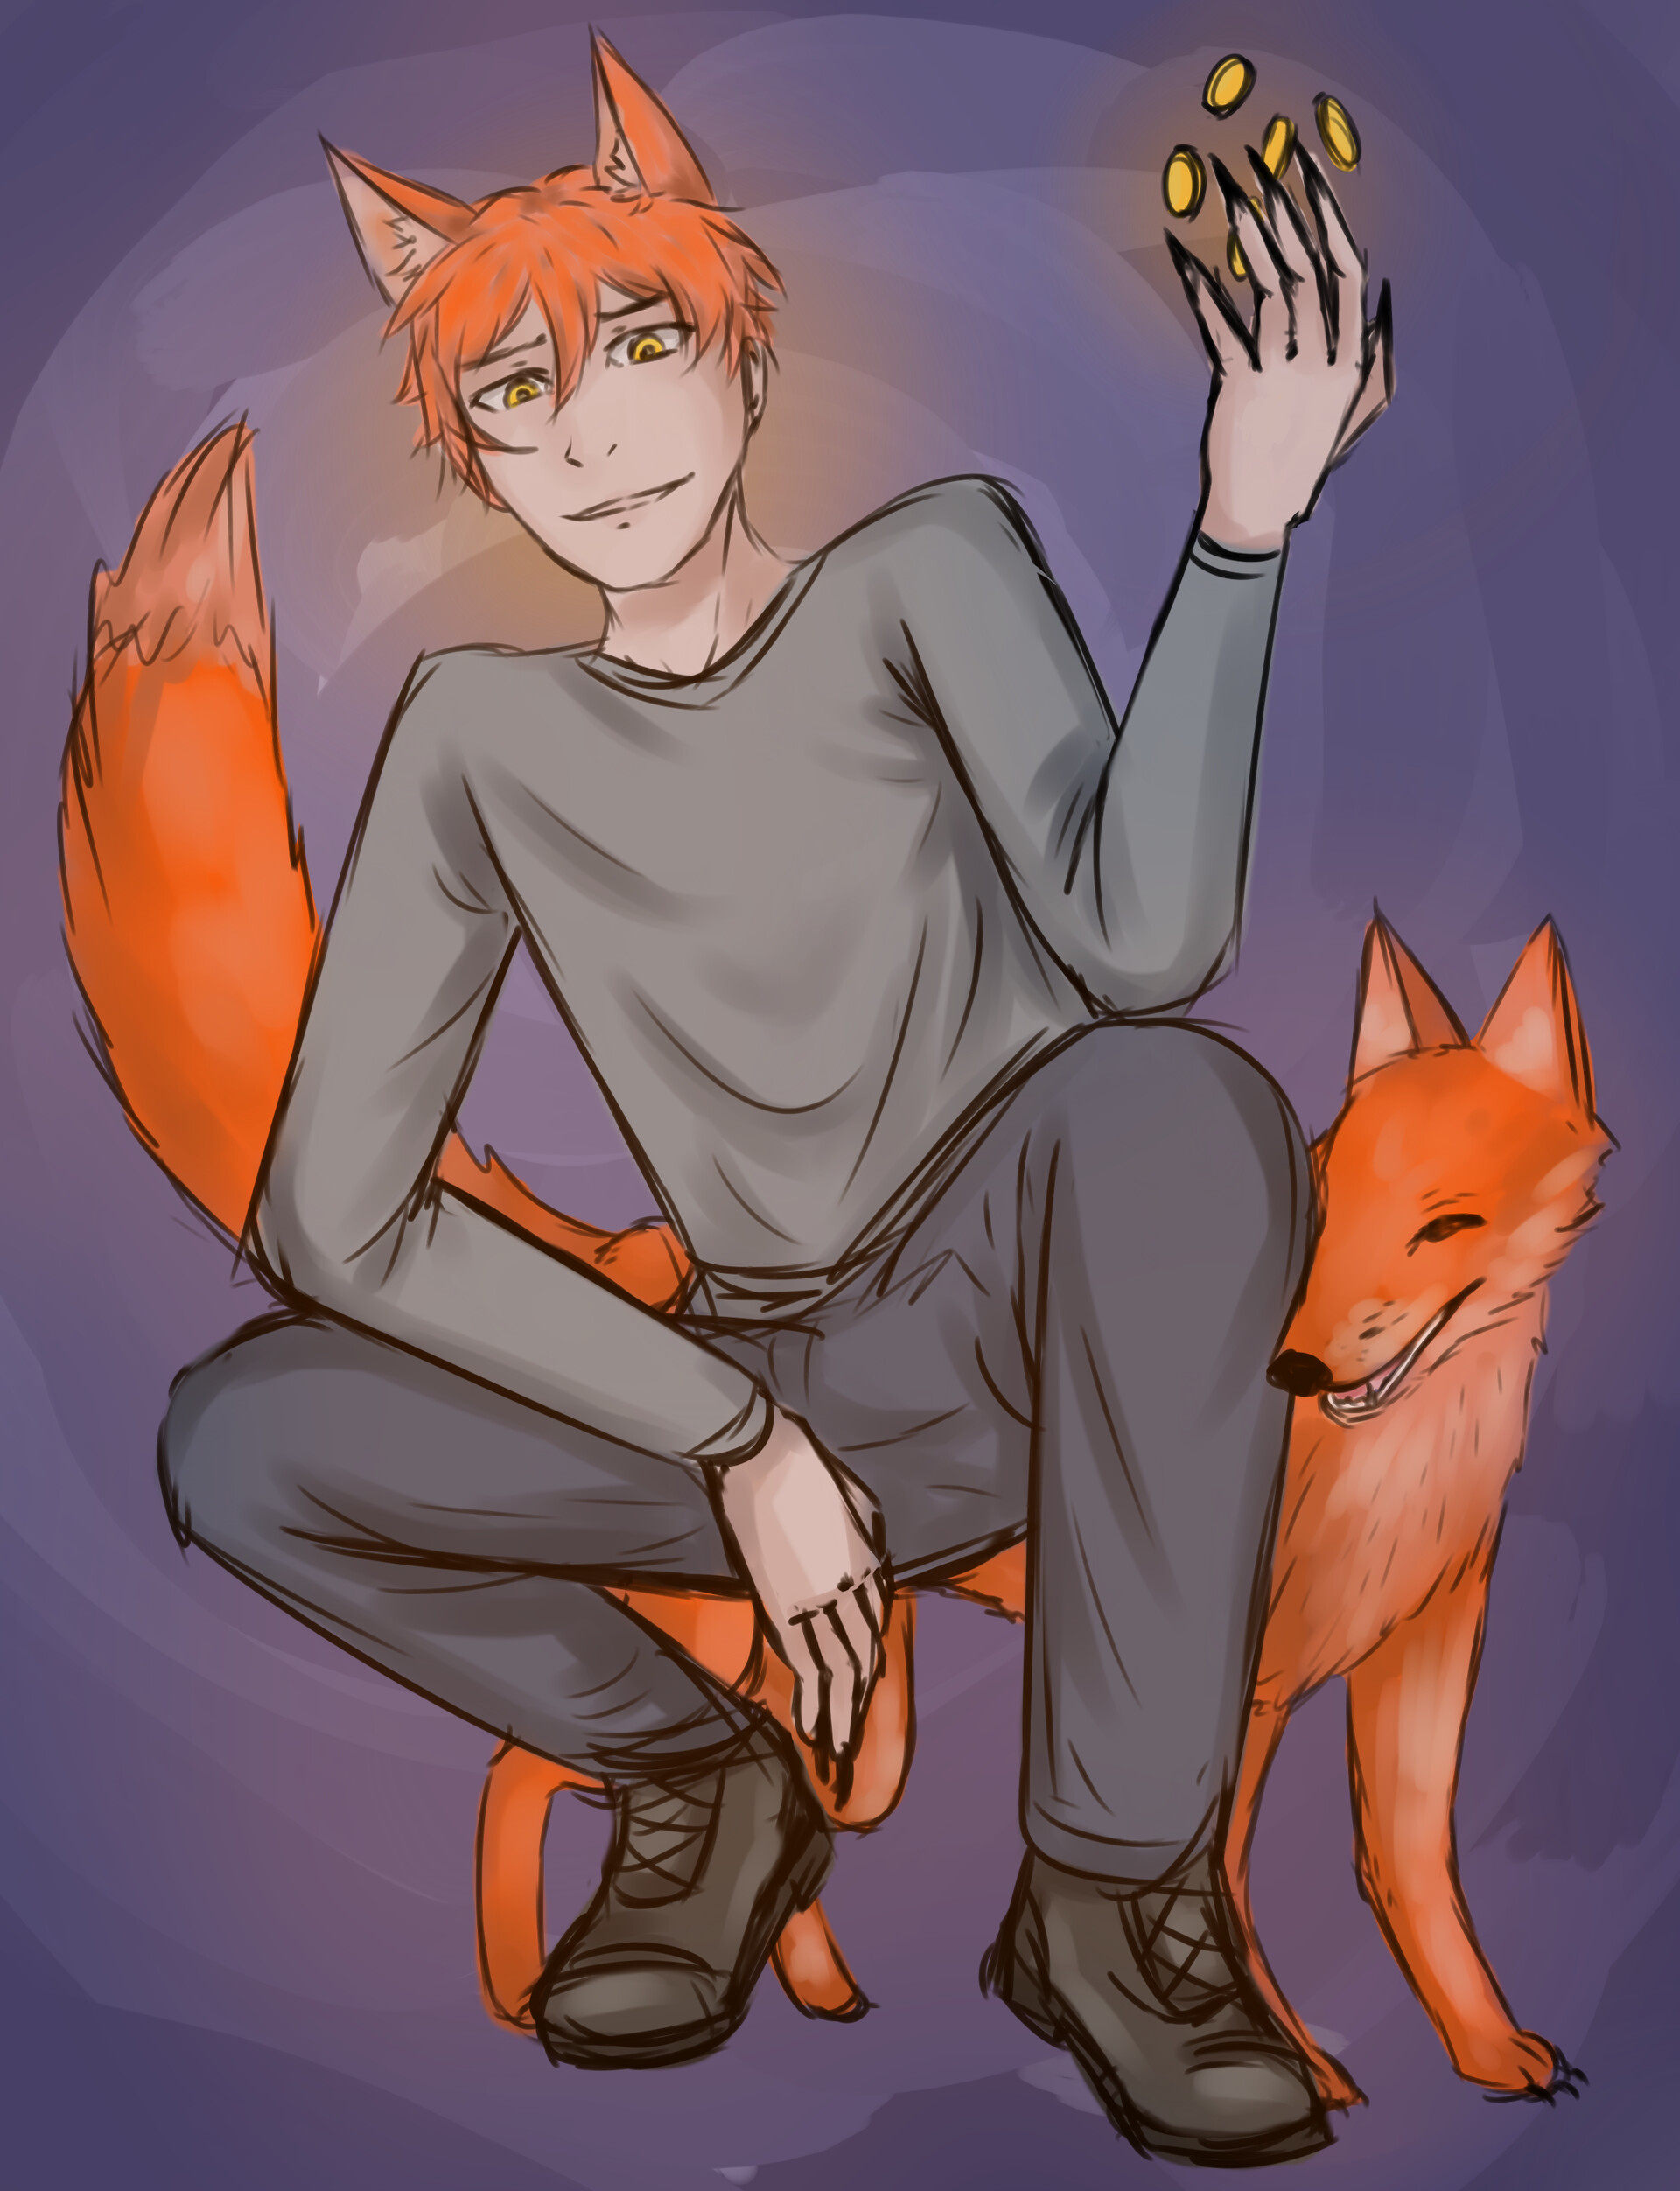 ArtStation - Regular sketch idea of trickster fox-boy